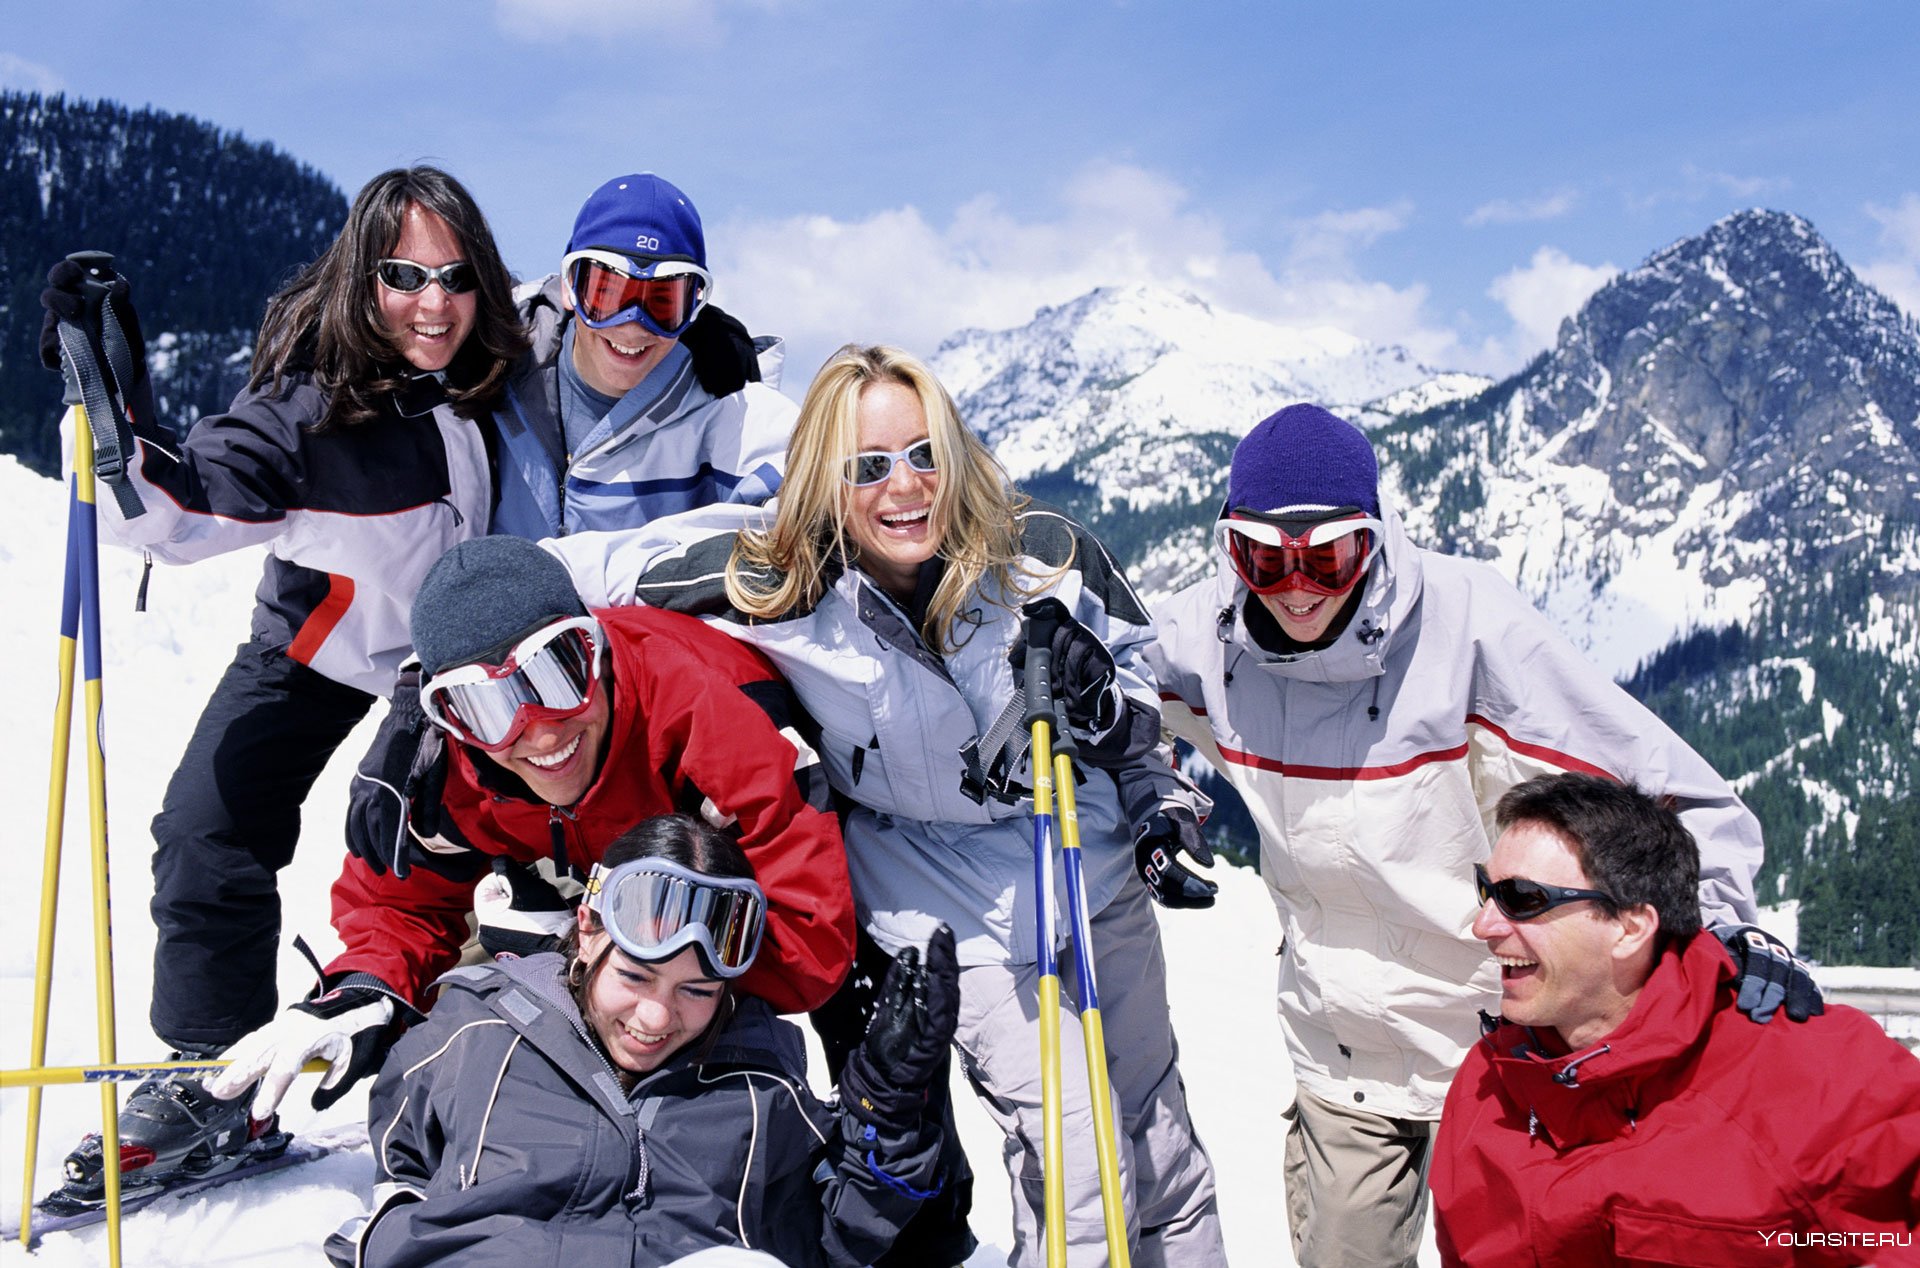 Катание на горнолыжном курорте. Люди на горнолыжном курорте. Люди на лыжах в горах. Горнолыжный туризм. Катание на горных лыжах.